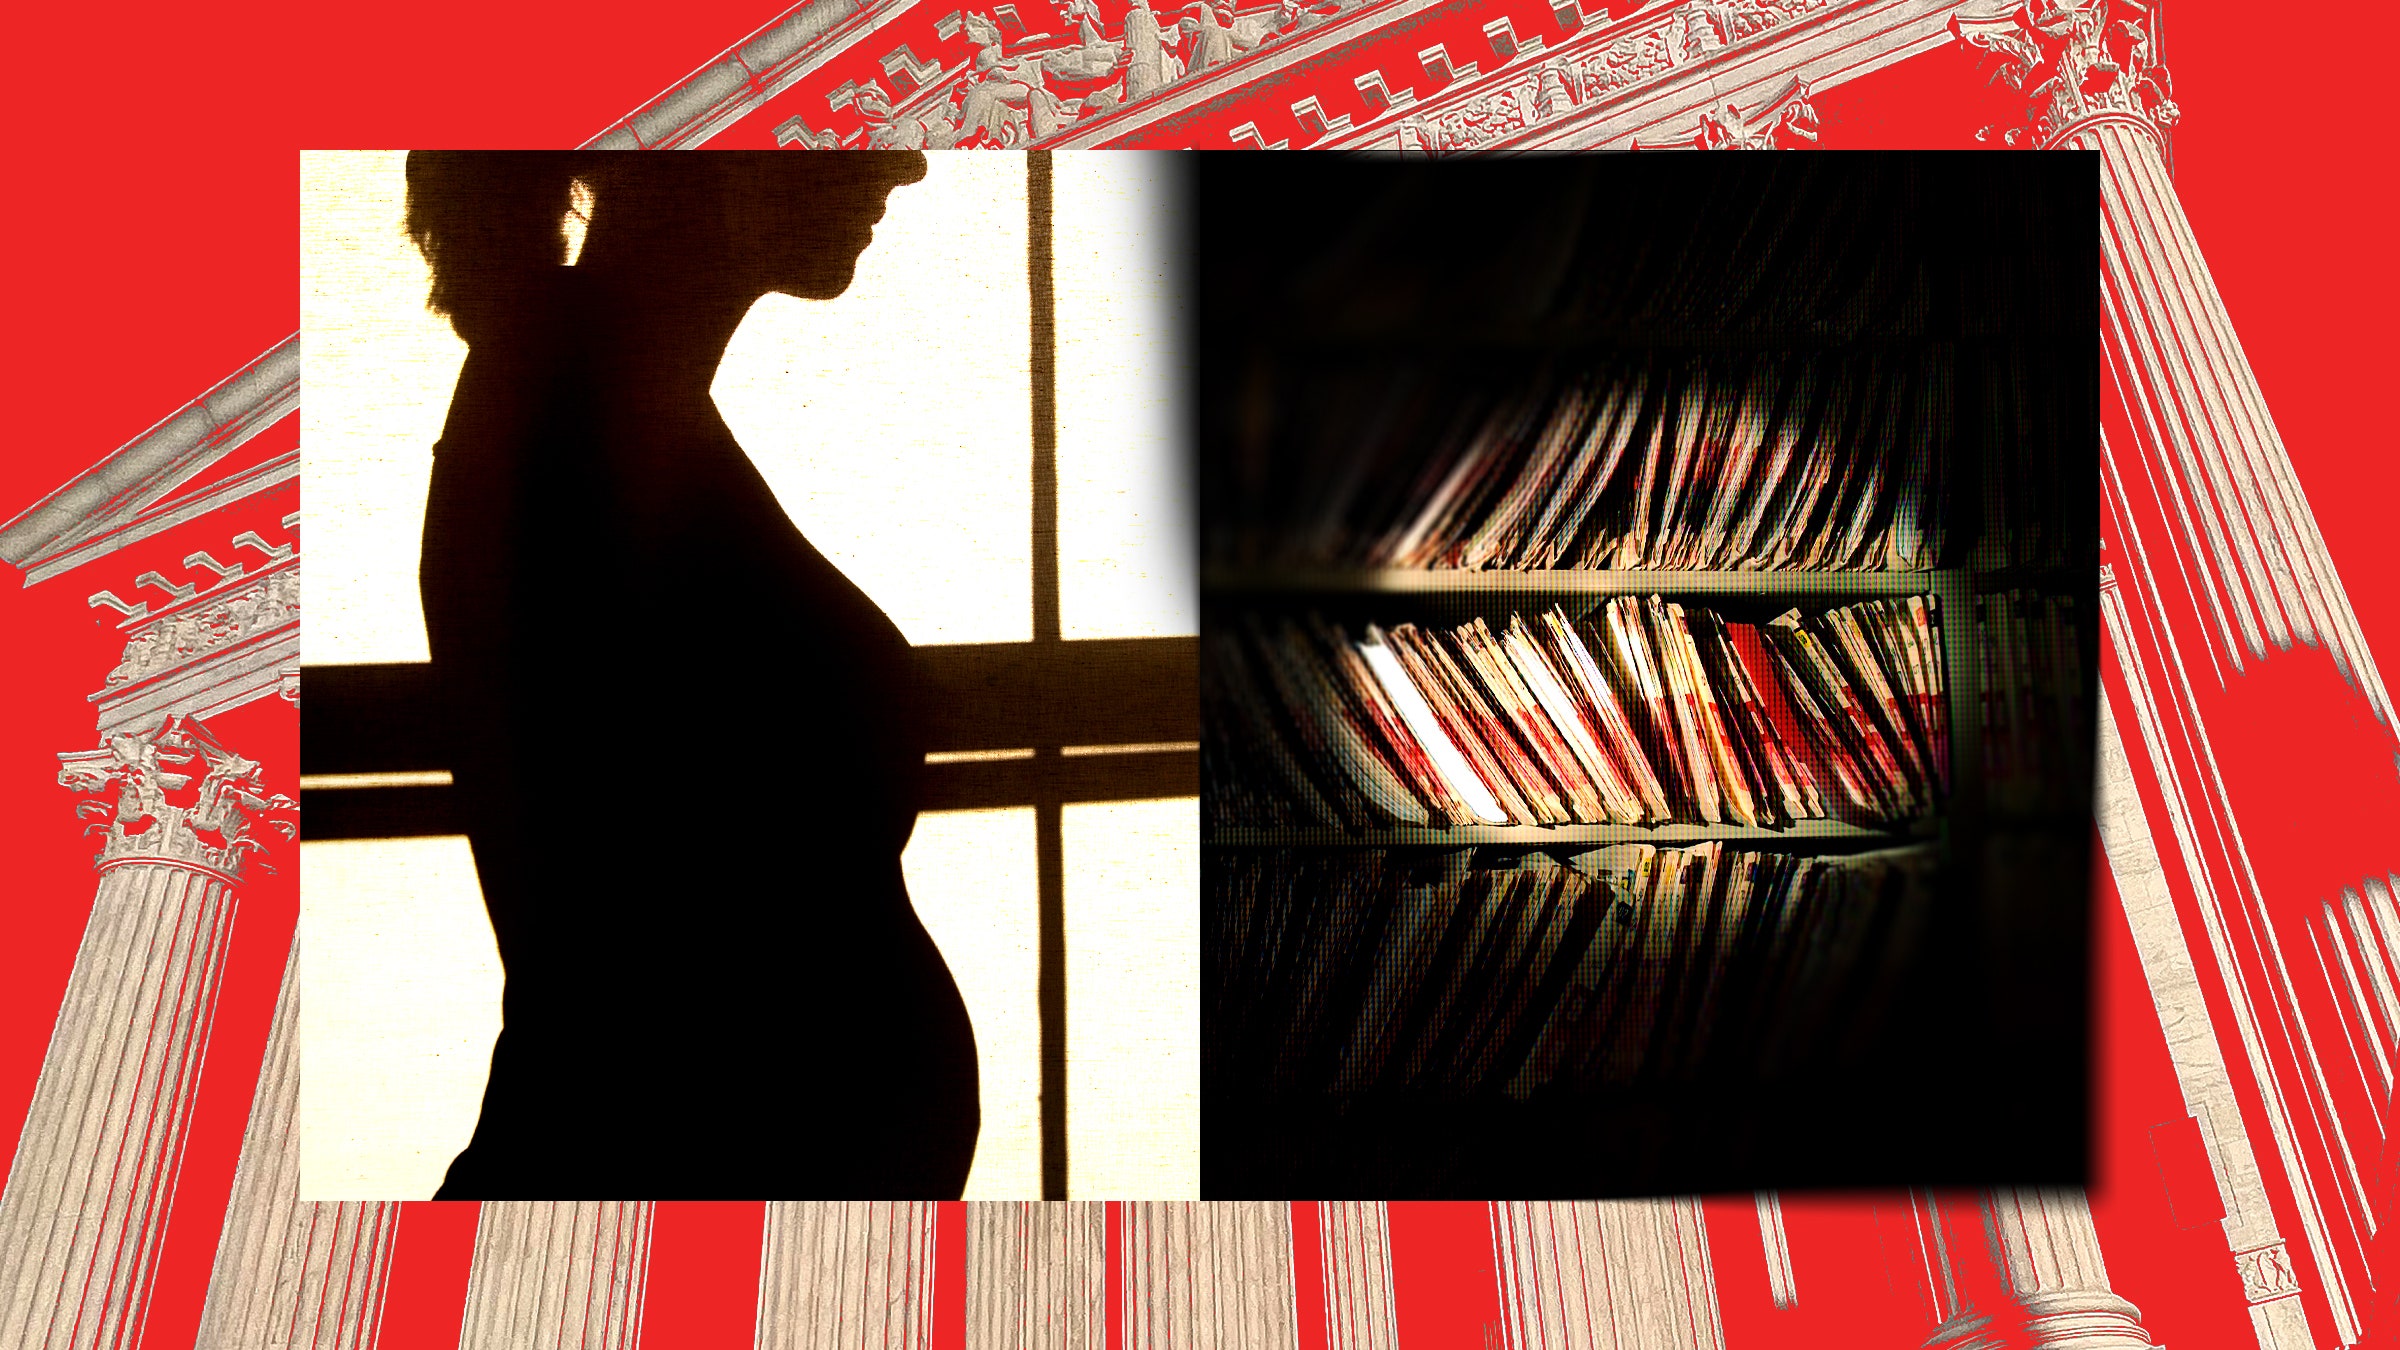 Colagem de fotos de um prontuário médico de silhueta de uma mulher grávida e do prédio da Suprema Corte